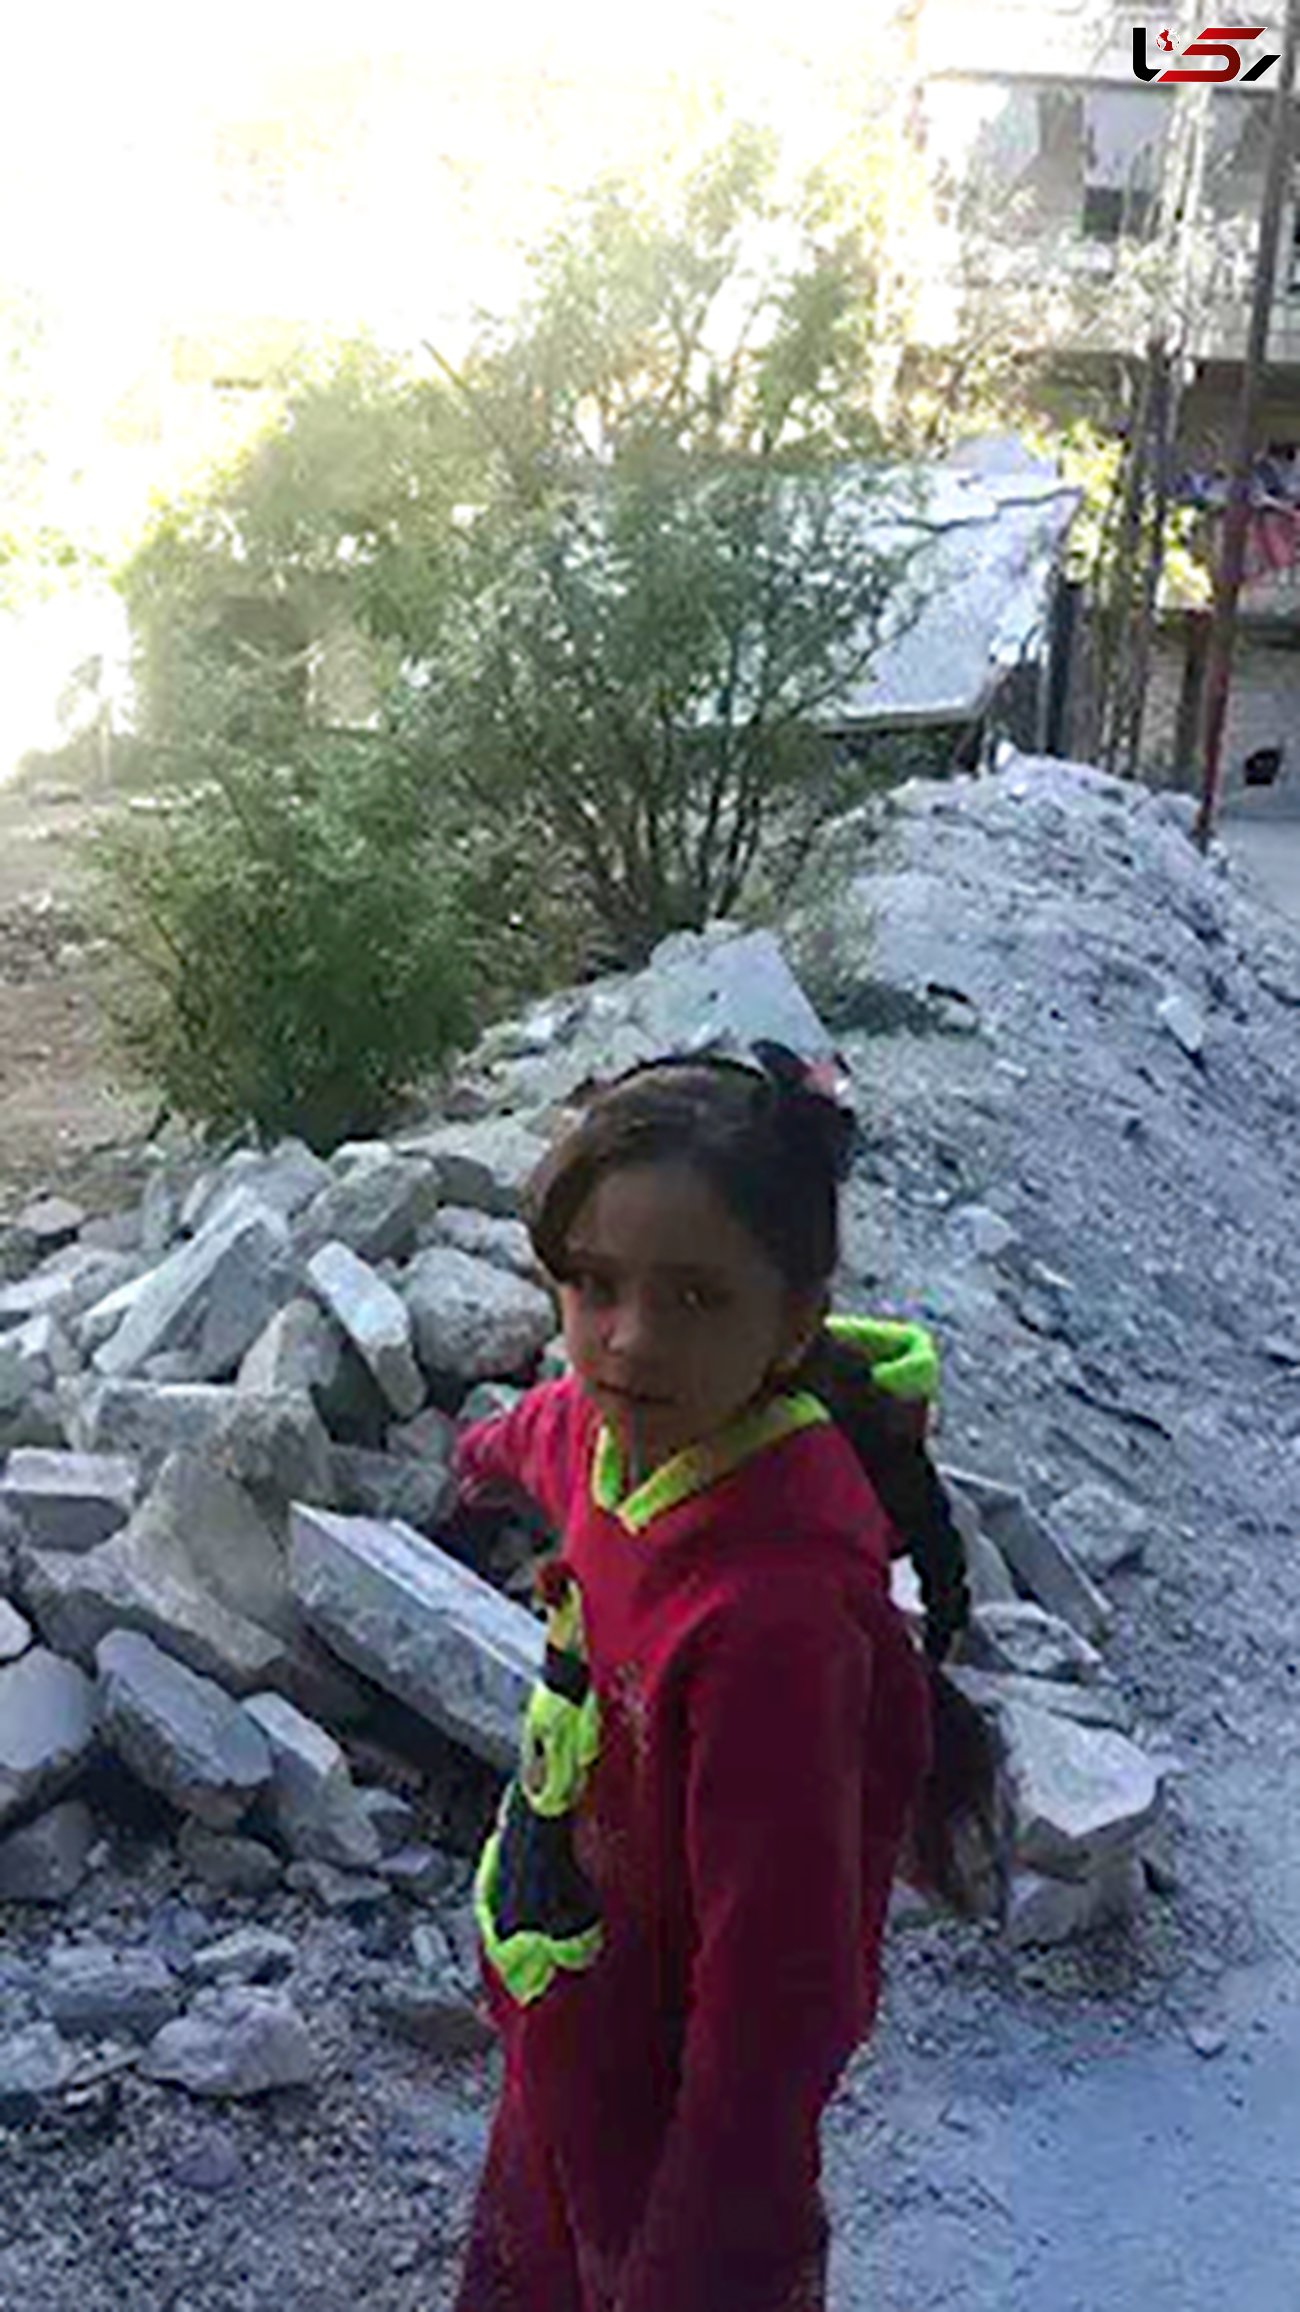 تصاویر و اخبار تلخ در توئیت دختر 7 ساله سوری +عکس